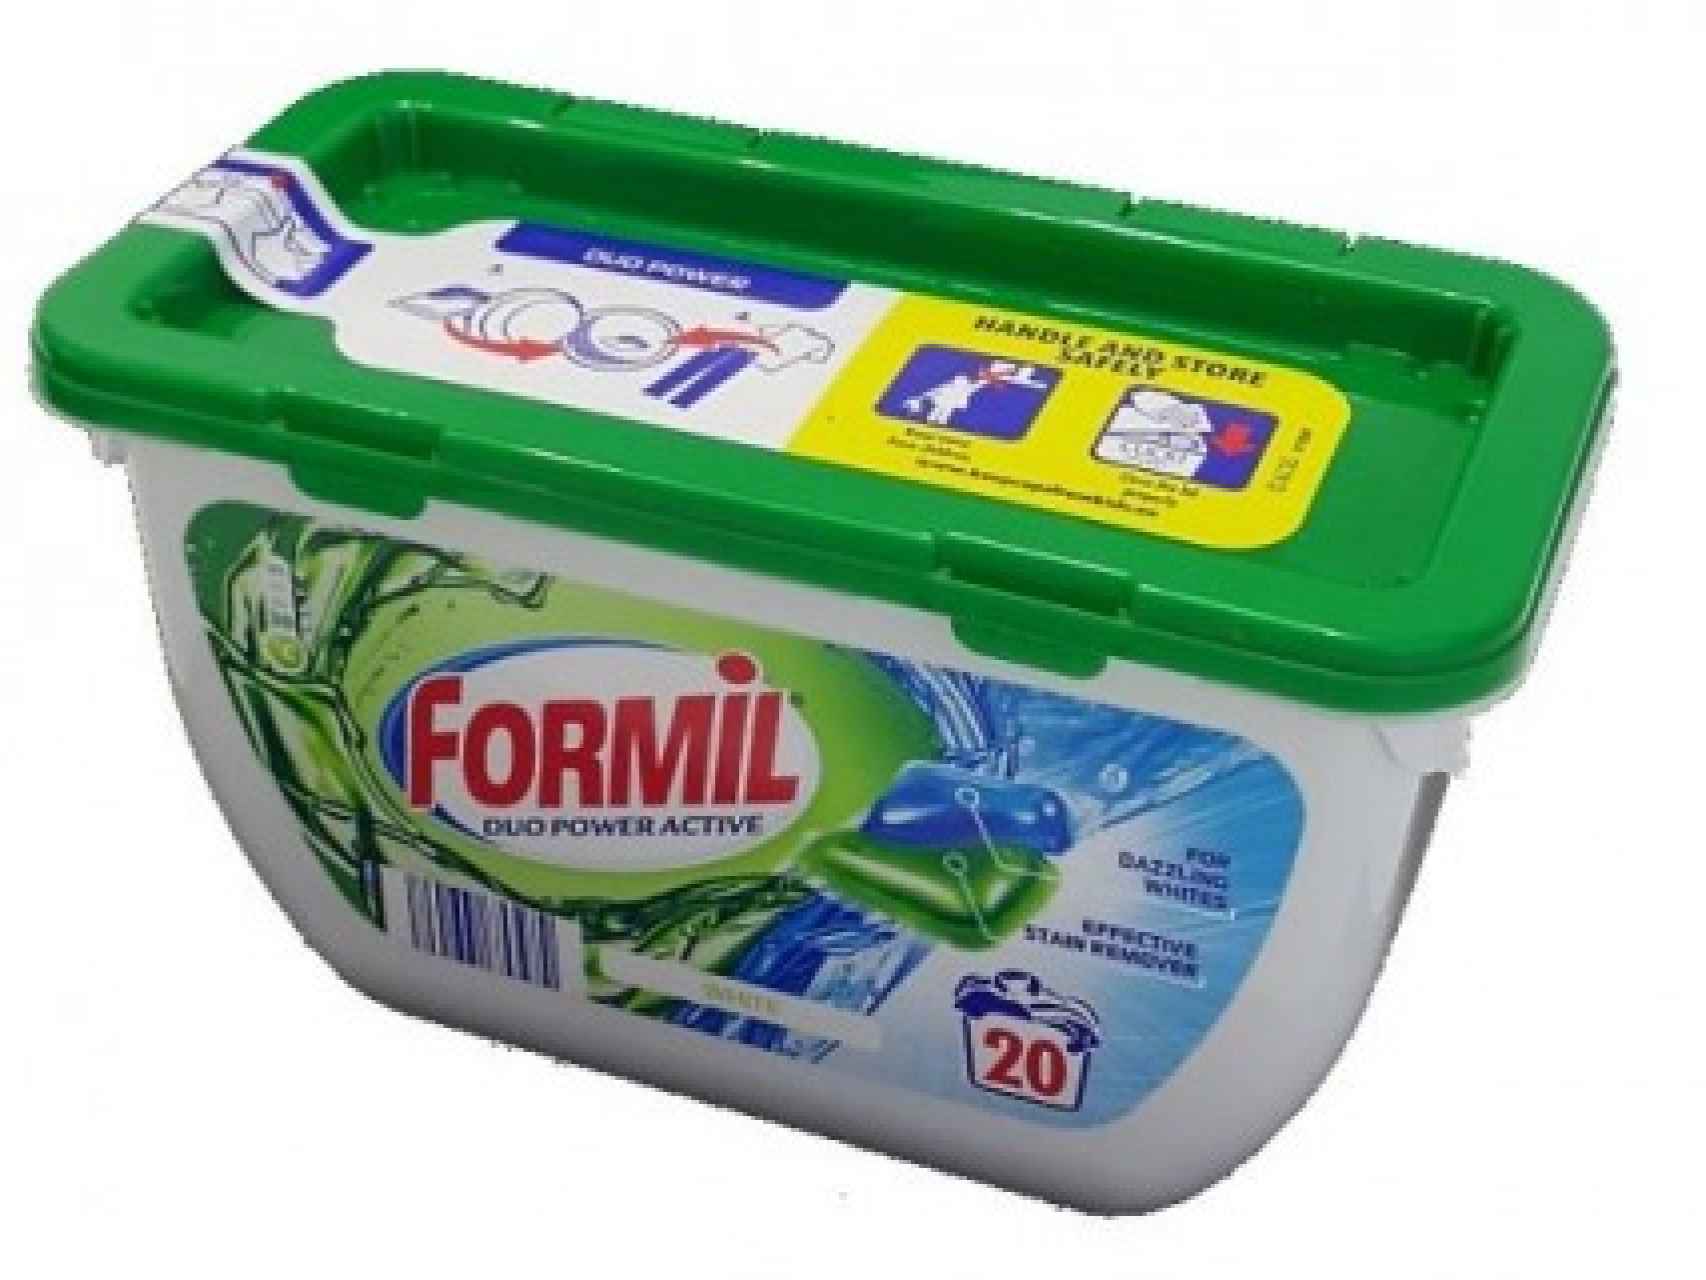 El detergente Formil, el mejor del mercado